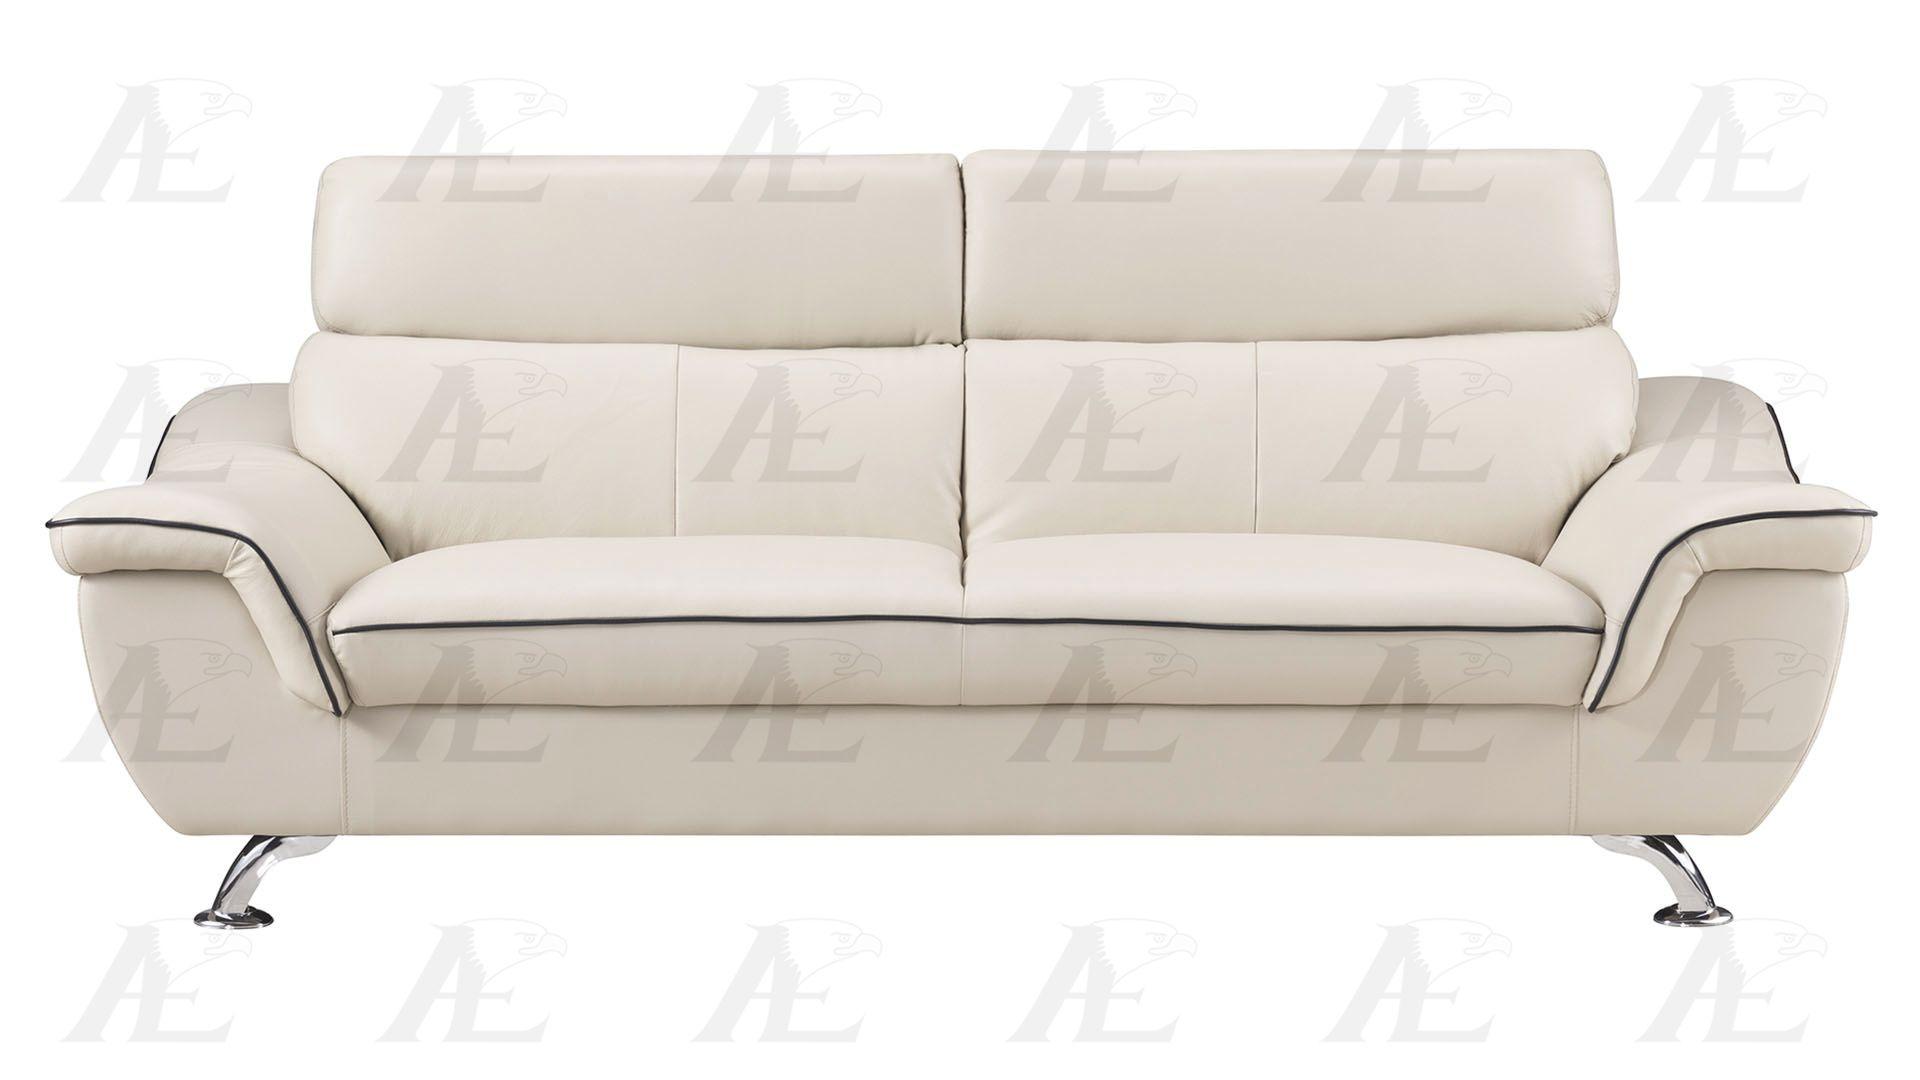 

    
American Eagle Furniture EK-B303-LG.BK Sofa and Loveseat Set Light Gray EK-B303-LG.BK Set-2
